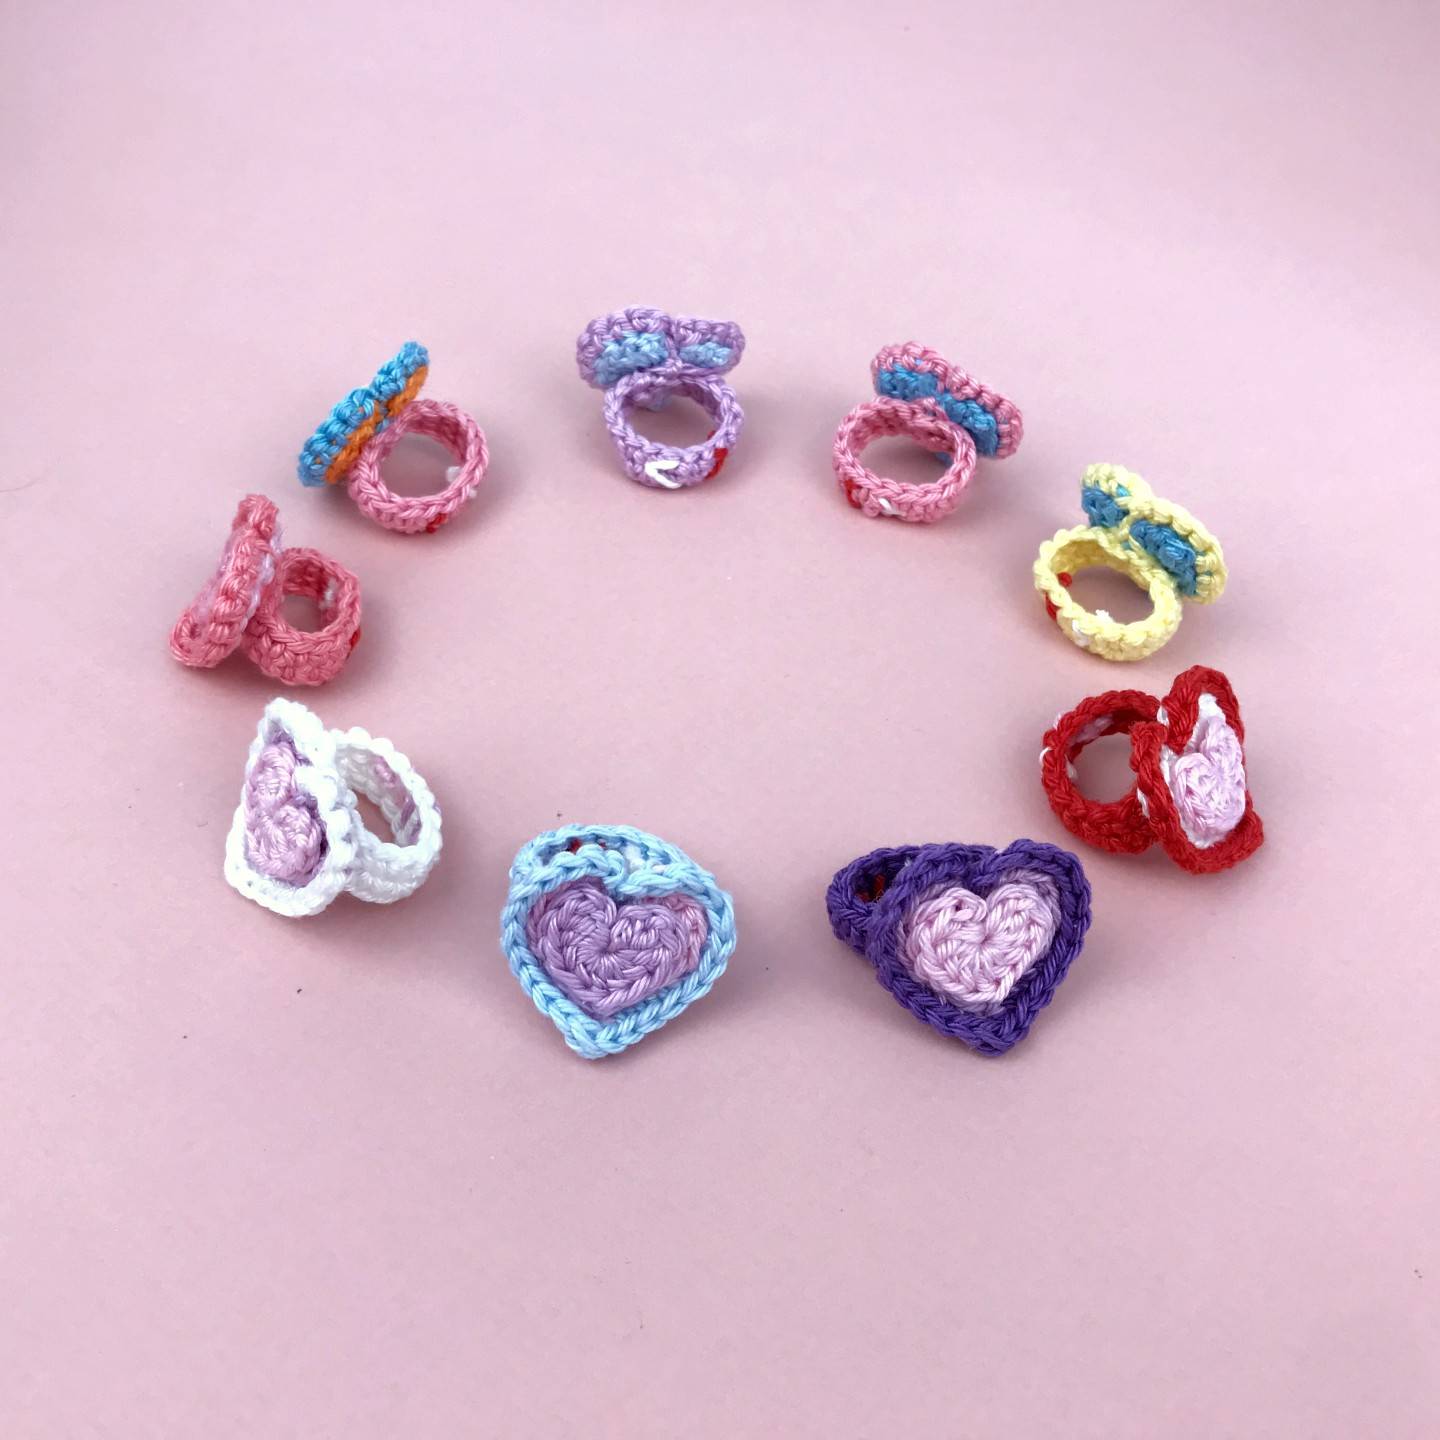 Heart Ring - Crochet pattern jewelry - My Rainbow Crochet